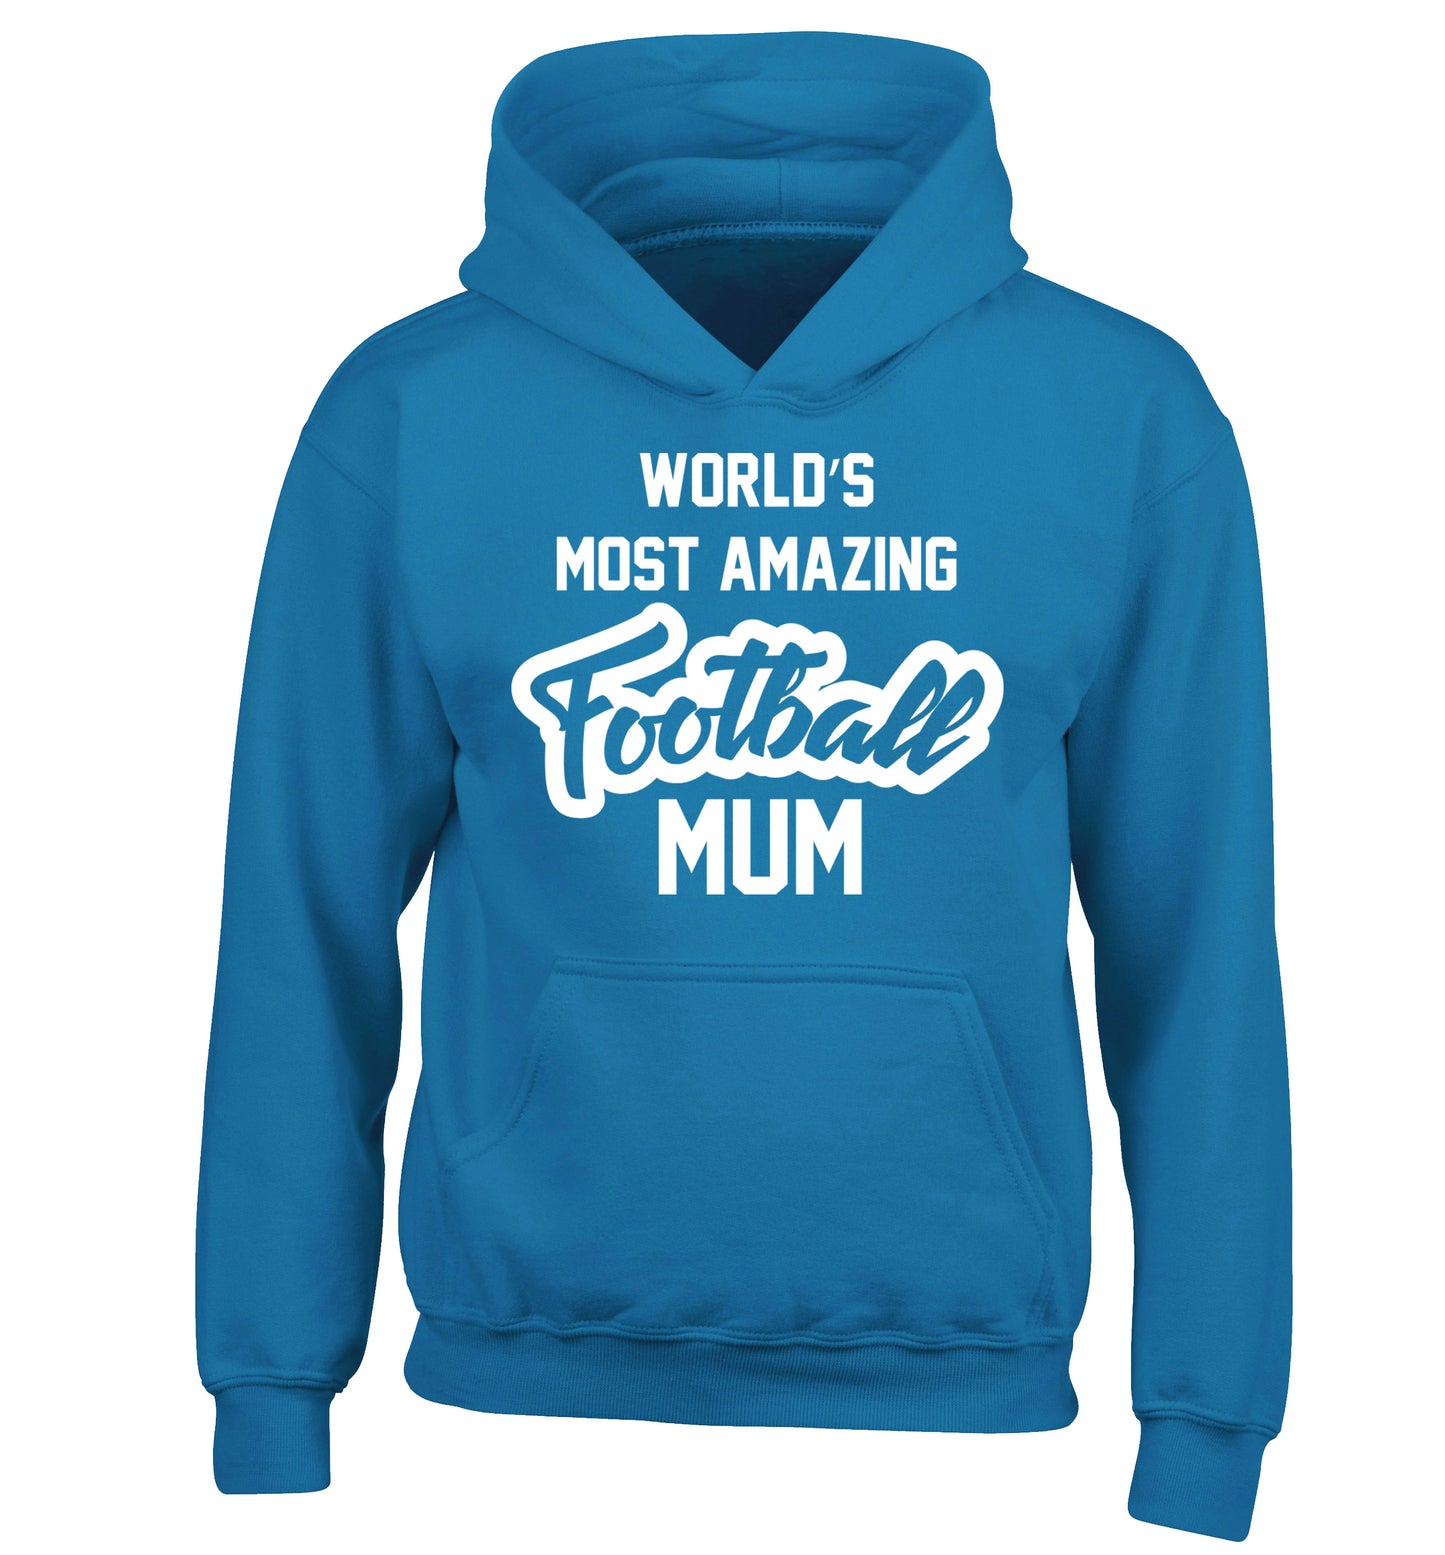 Worlds most amazing football mum children's blue hoodie 12-14 Years